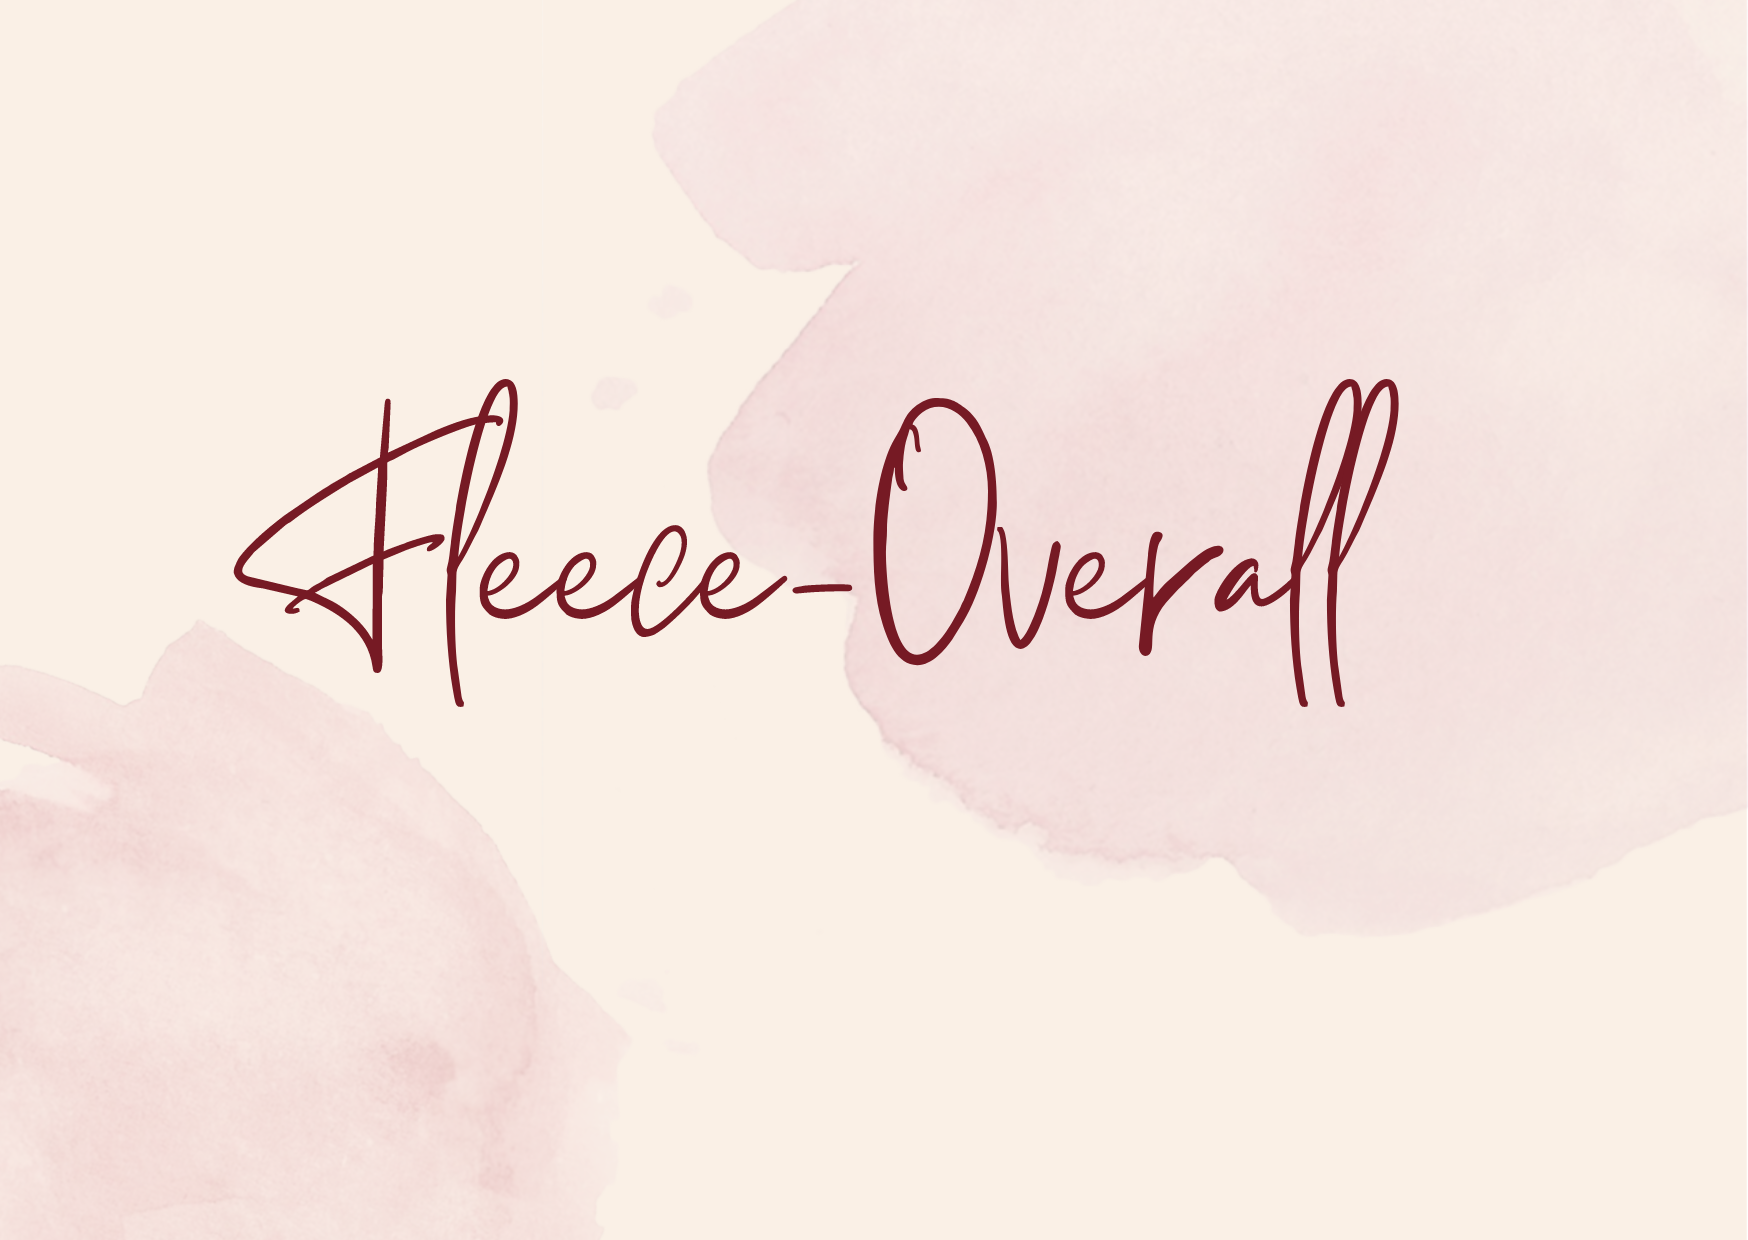 Fleece-Overall